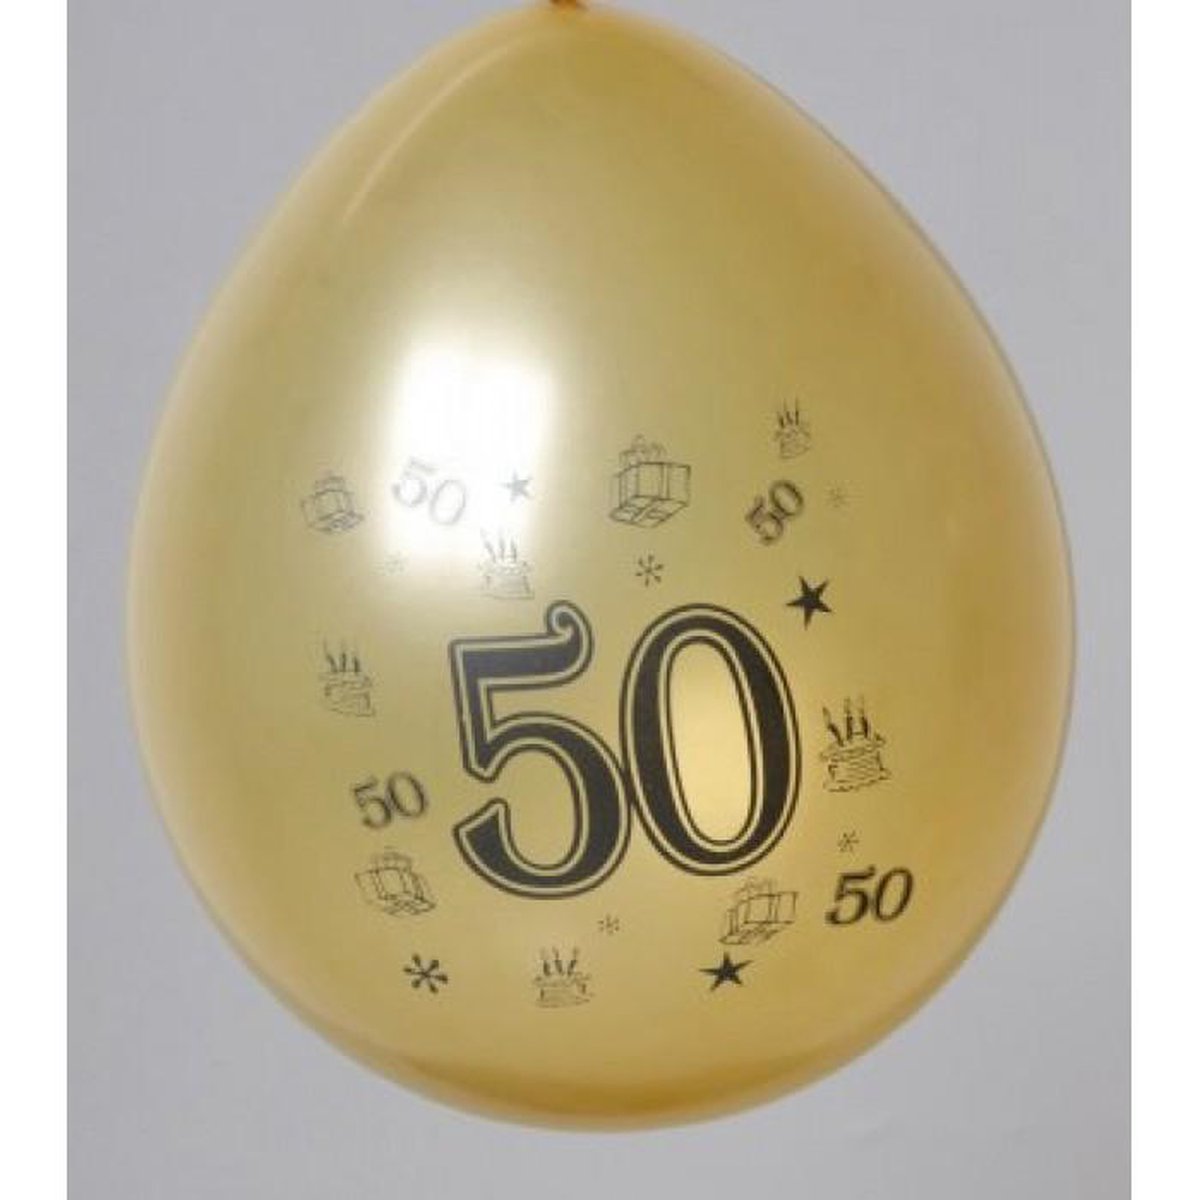 Ballon 1 Jaar Metallic Ø 30cm 6 Stuks - Feestartikelen/party 